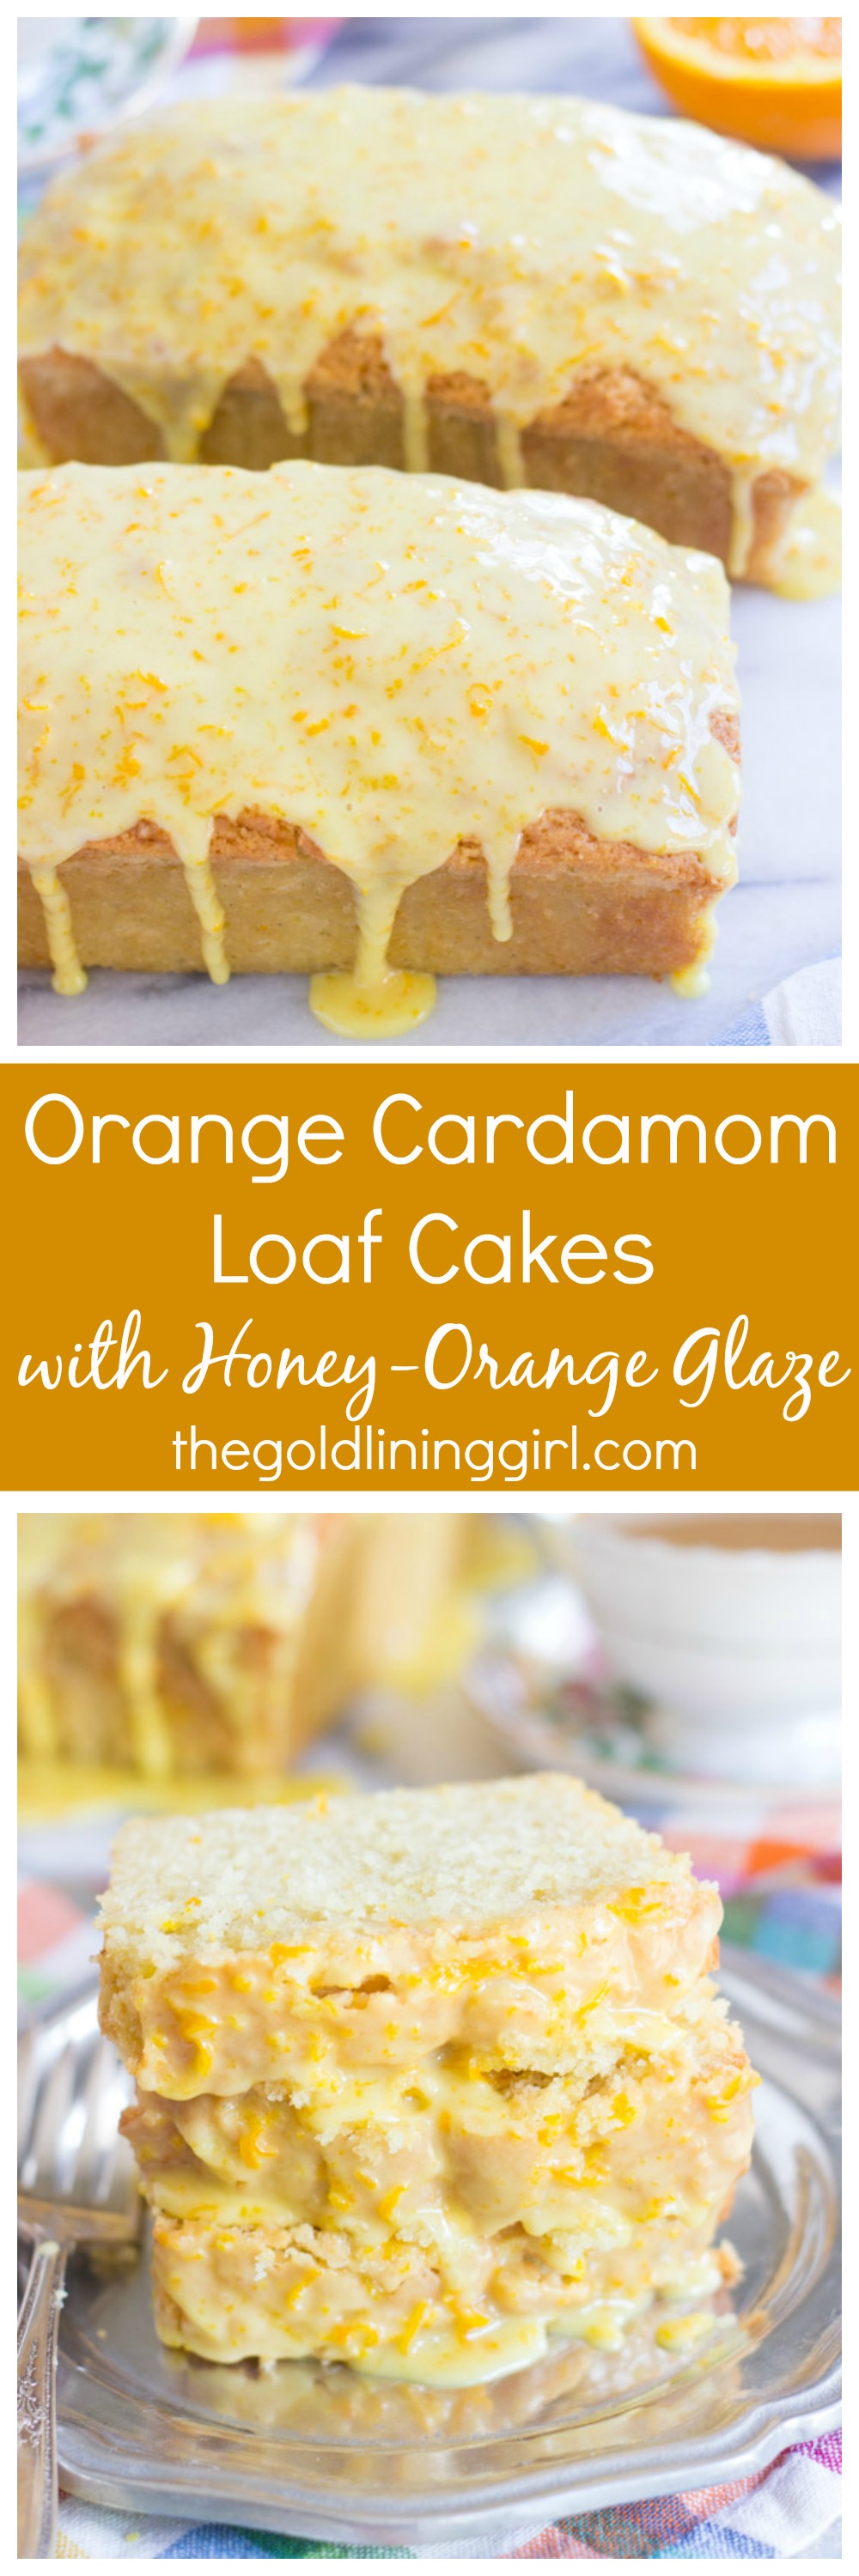 Orange Cardamom Loaf Cakes with Orange-Honey Glaze